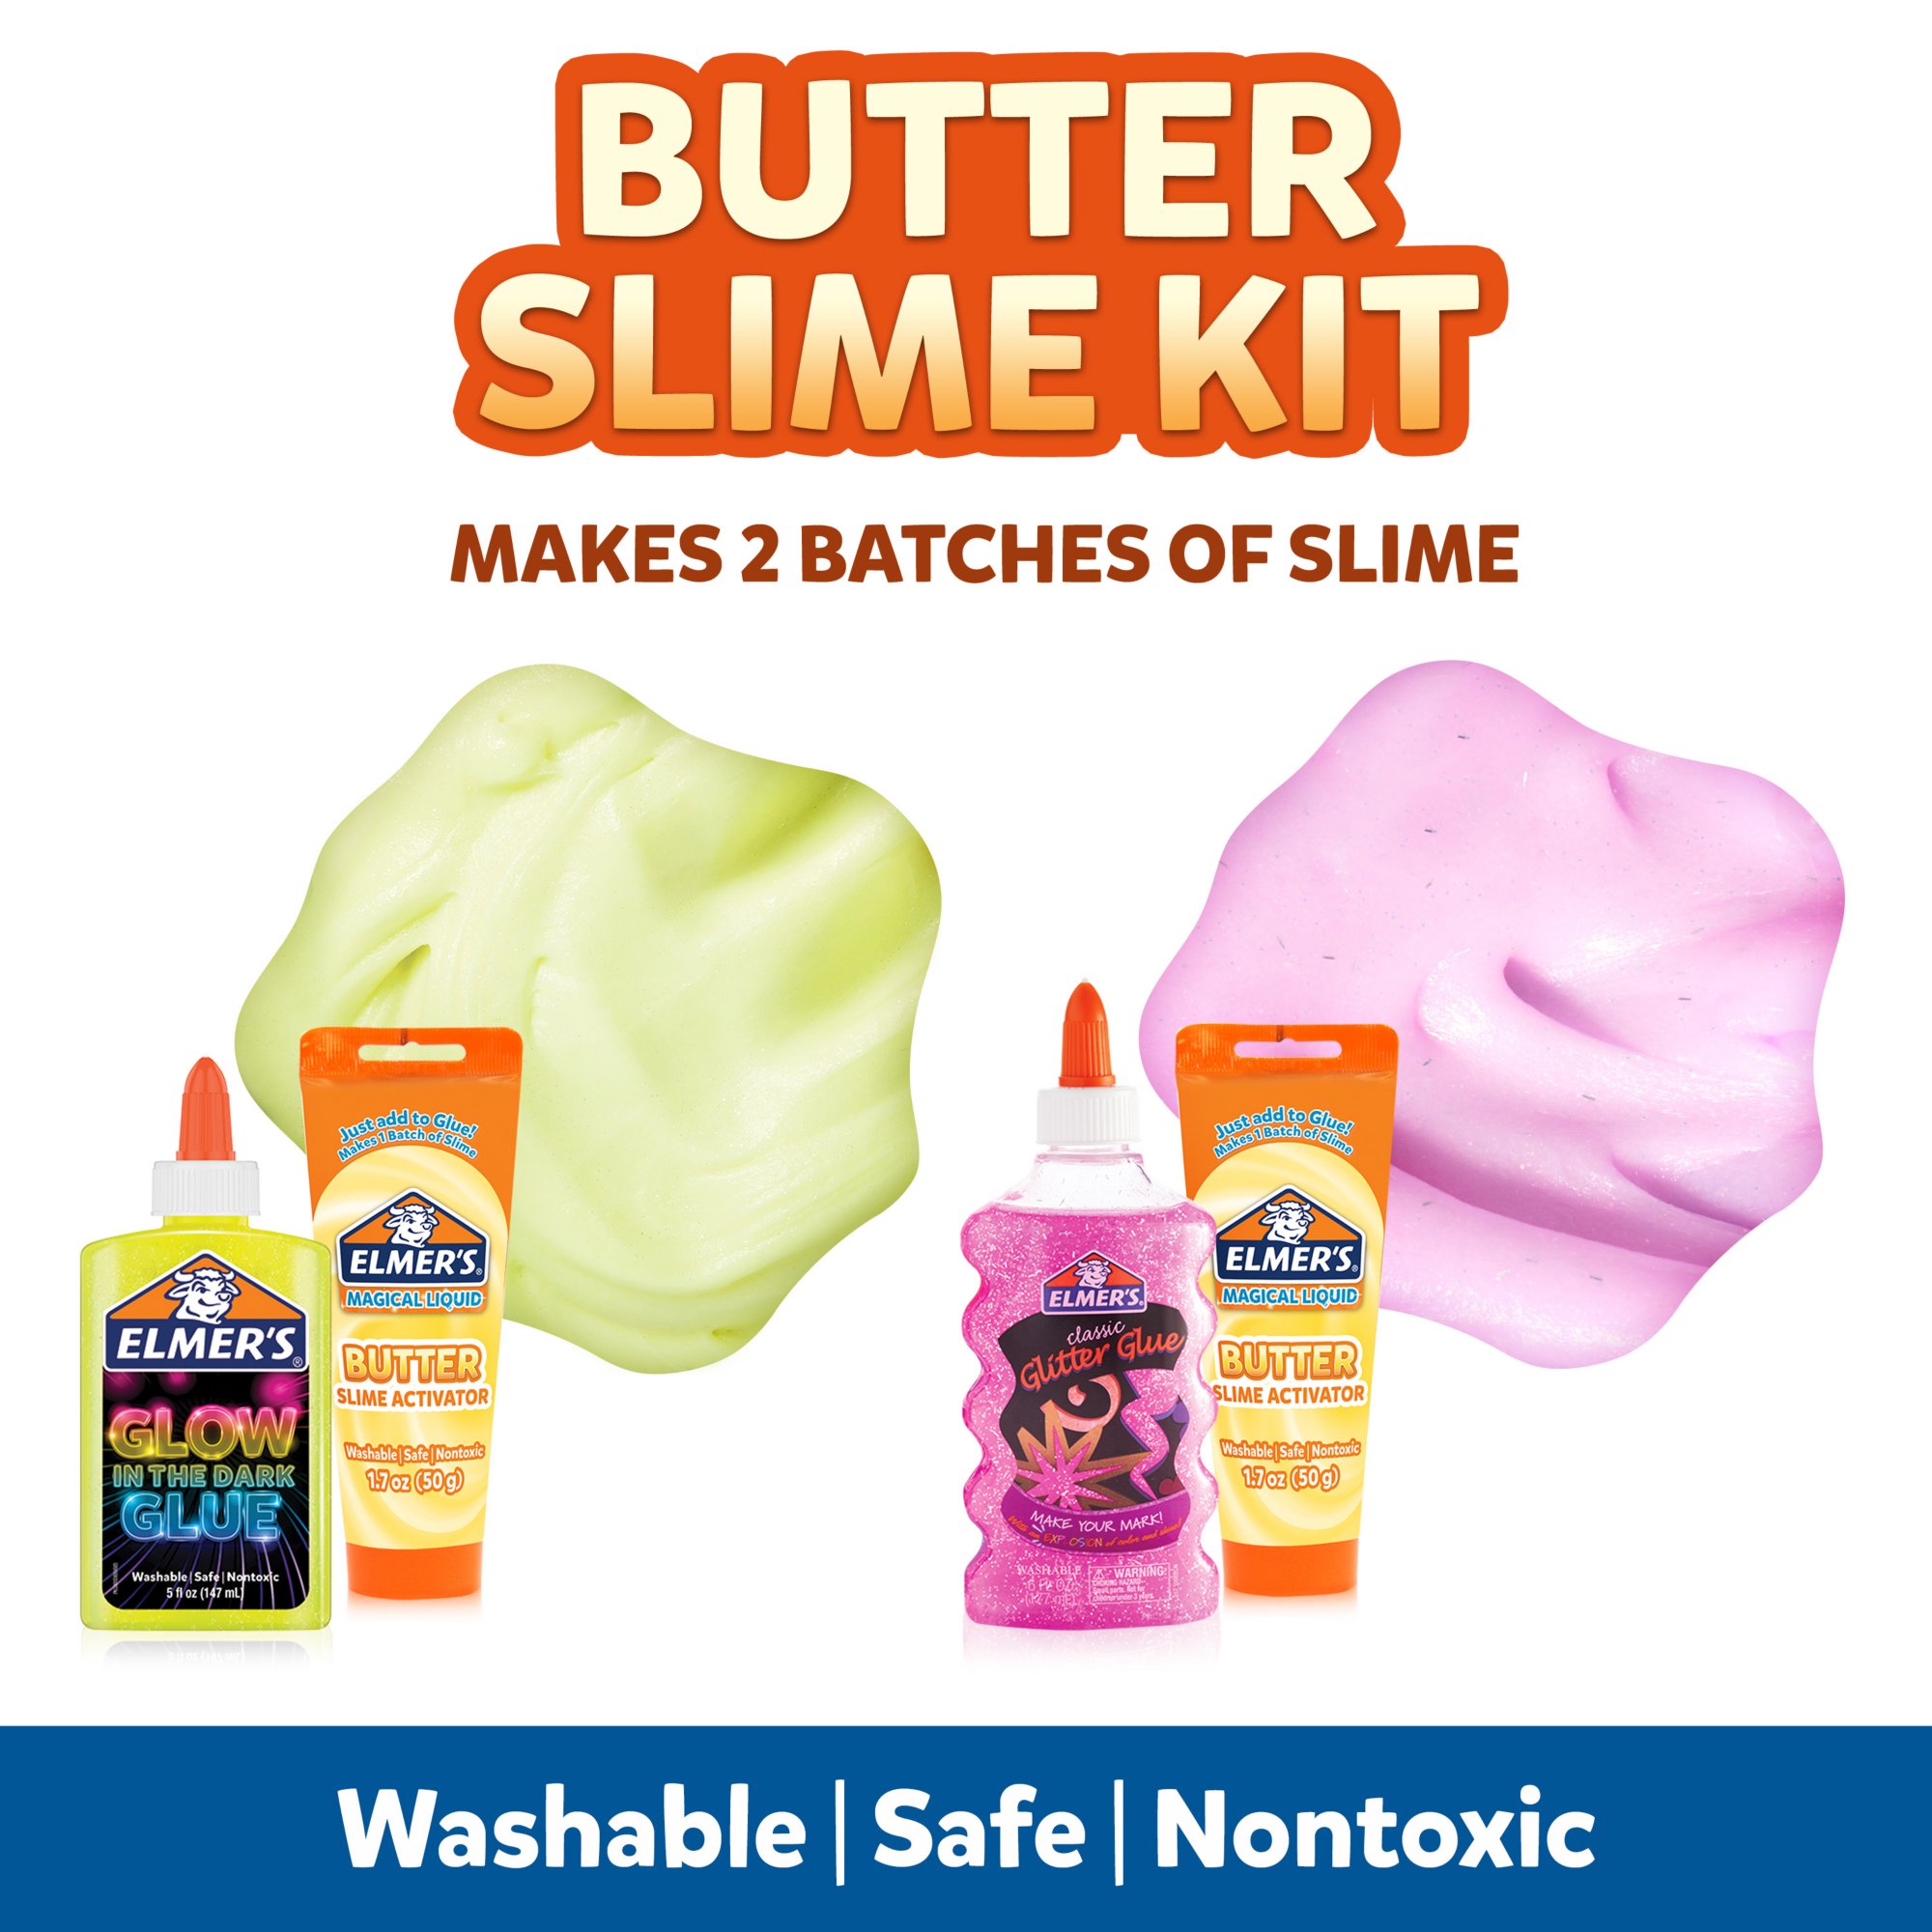 NEW Elmer's Slime Kit Reviews!! Cosmic Shimmer, Fluffy, and Butter